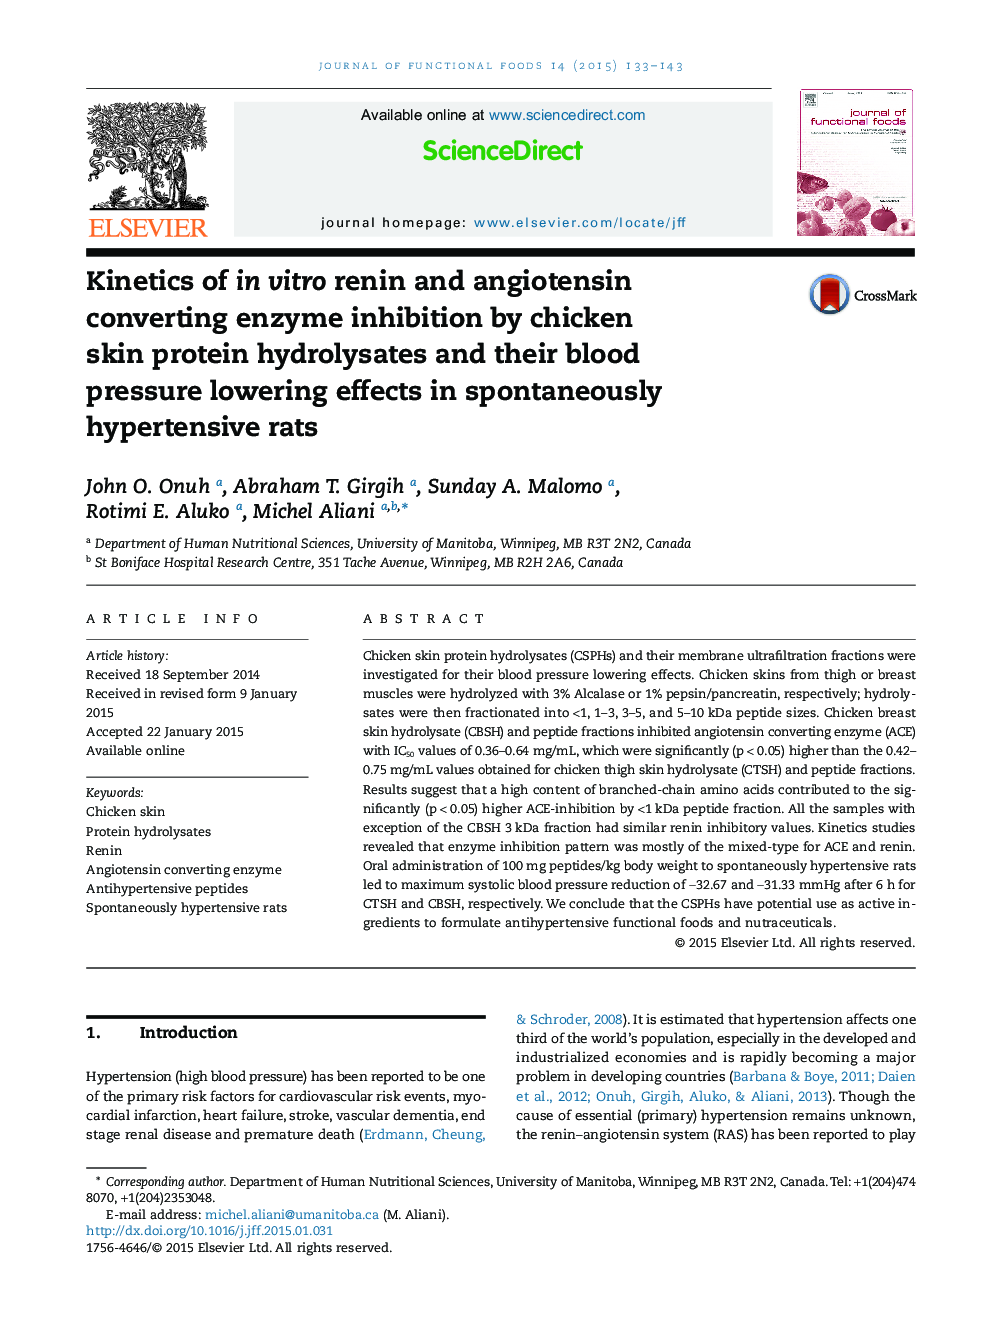 سینتیک انقباض آنزیمی تبدیل آنزیم رنین و آنژیوتانسین با استفاده از هیدرولیز پروتئین پوست مرغ و اثرات کاهش آن در موش های خودبهخود افزایش فشار خون 